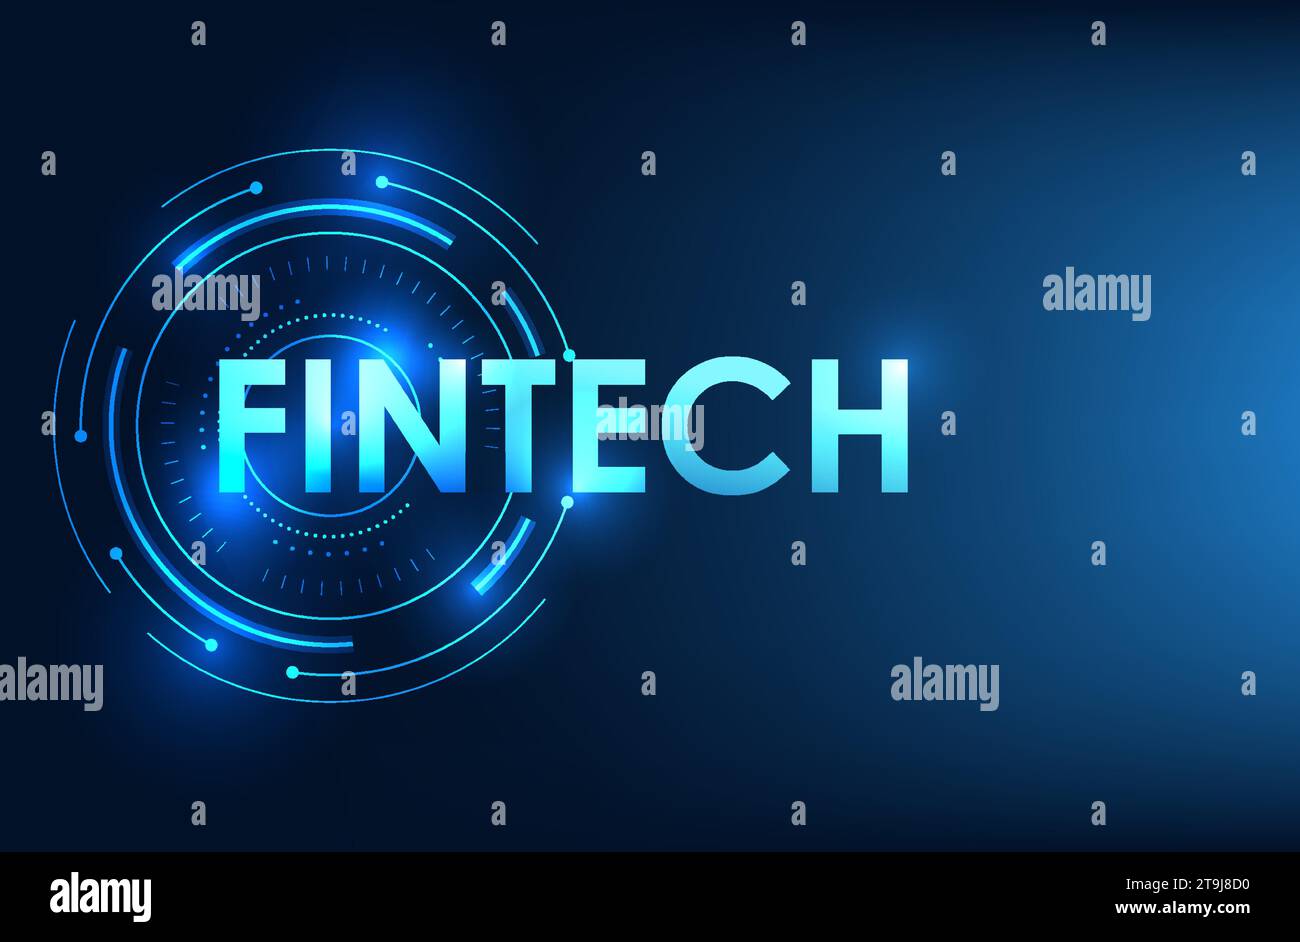 La technologie financière Fintech est dans le cercle de la technologie. Il montre une banque utilisant la technologie pour atteindre les utilisateurs, une bourse, une entreprise. Illustration vectorielle Illustration de Vecteur